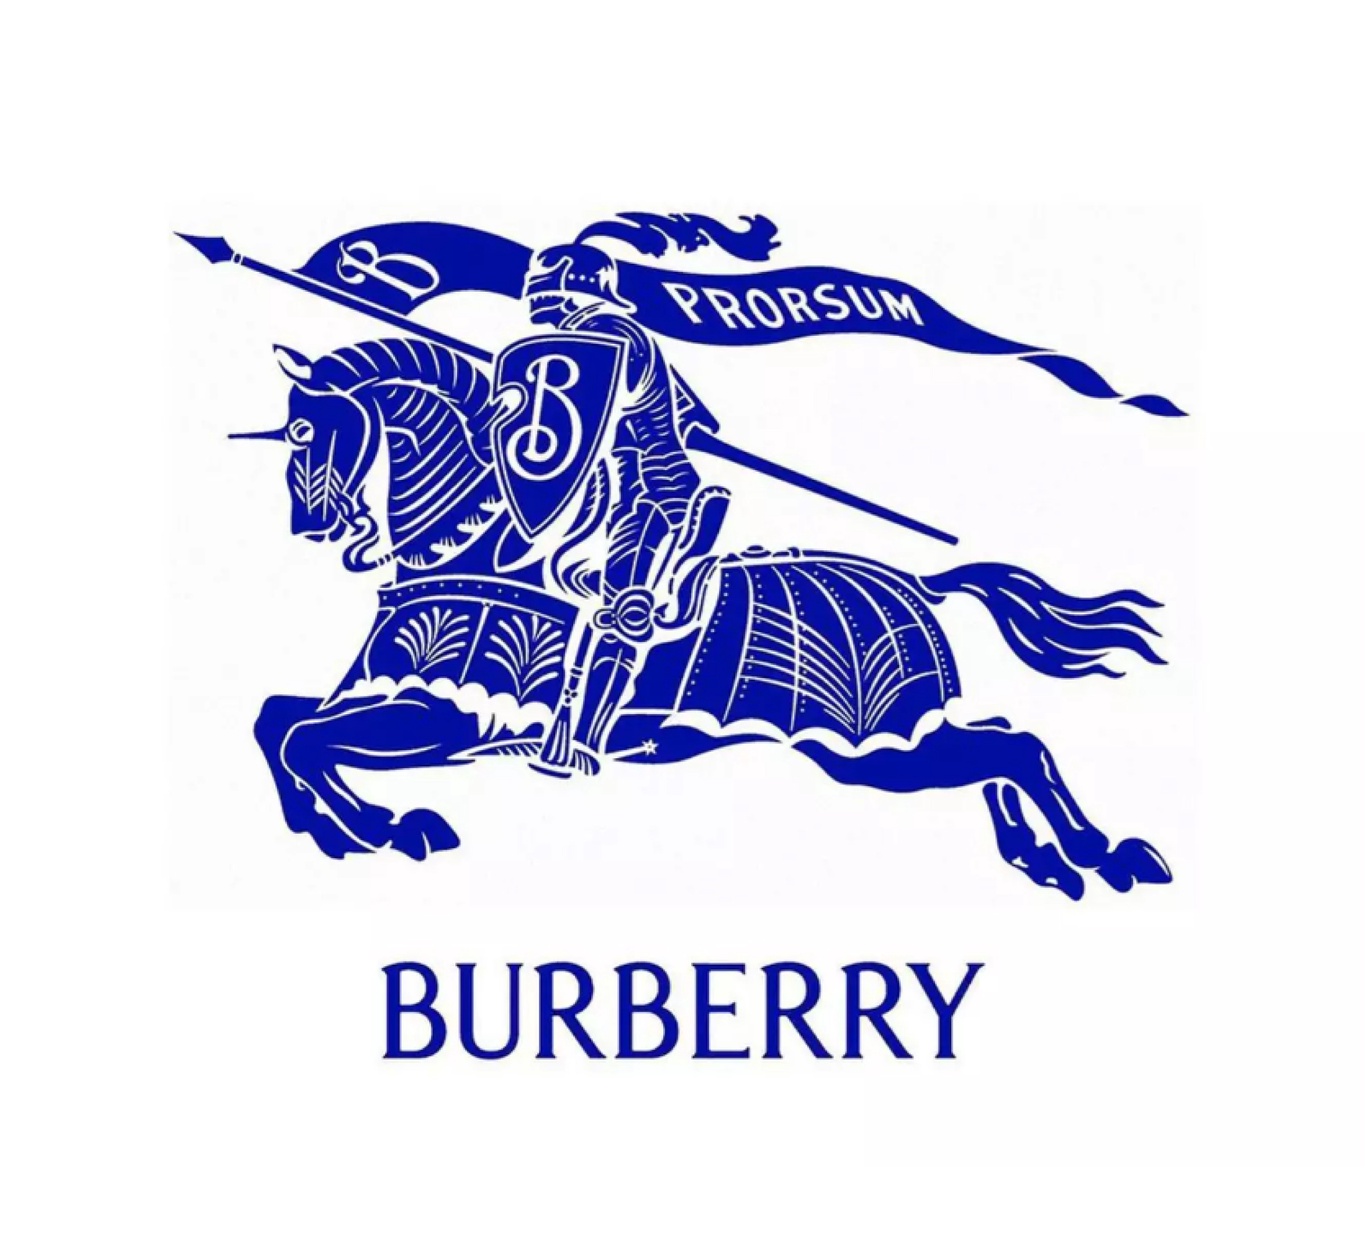 Новый логотип Burberry / Все о дизайне / Pollskill